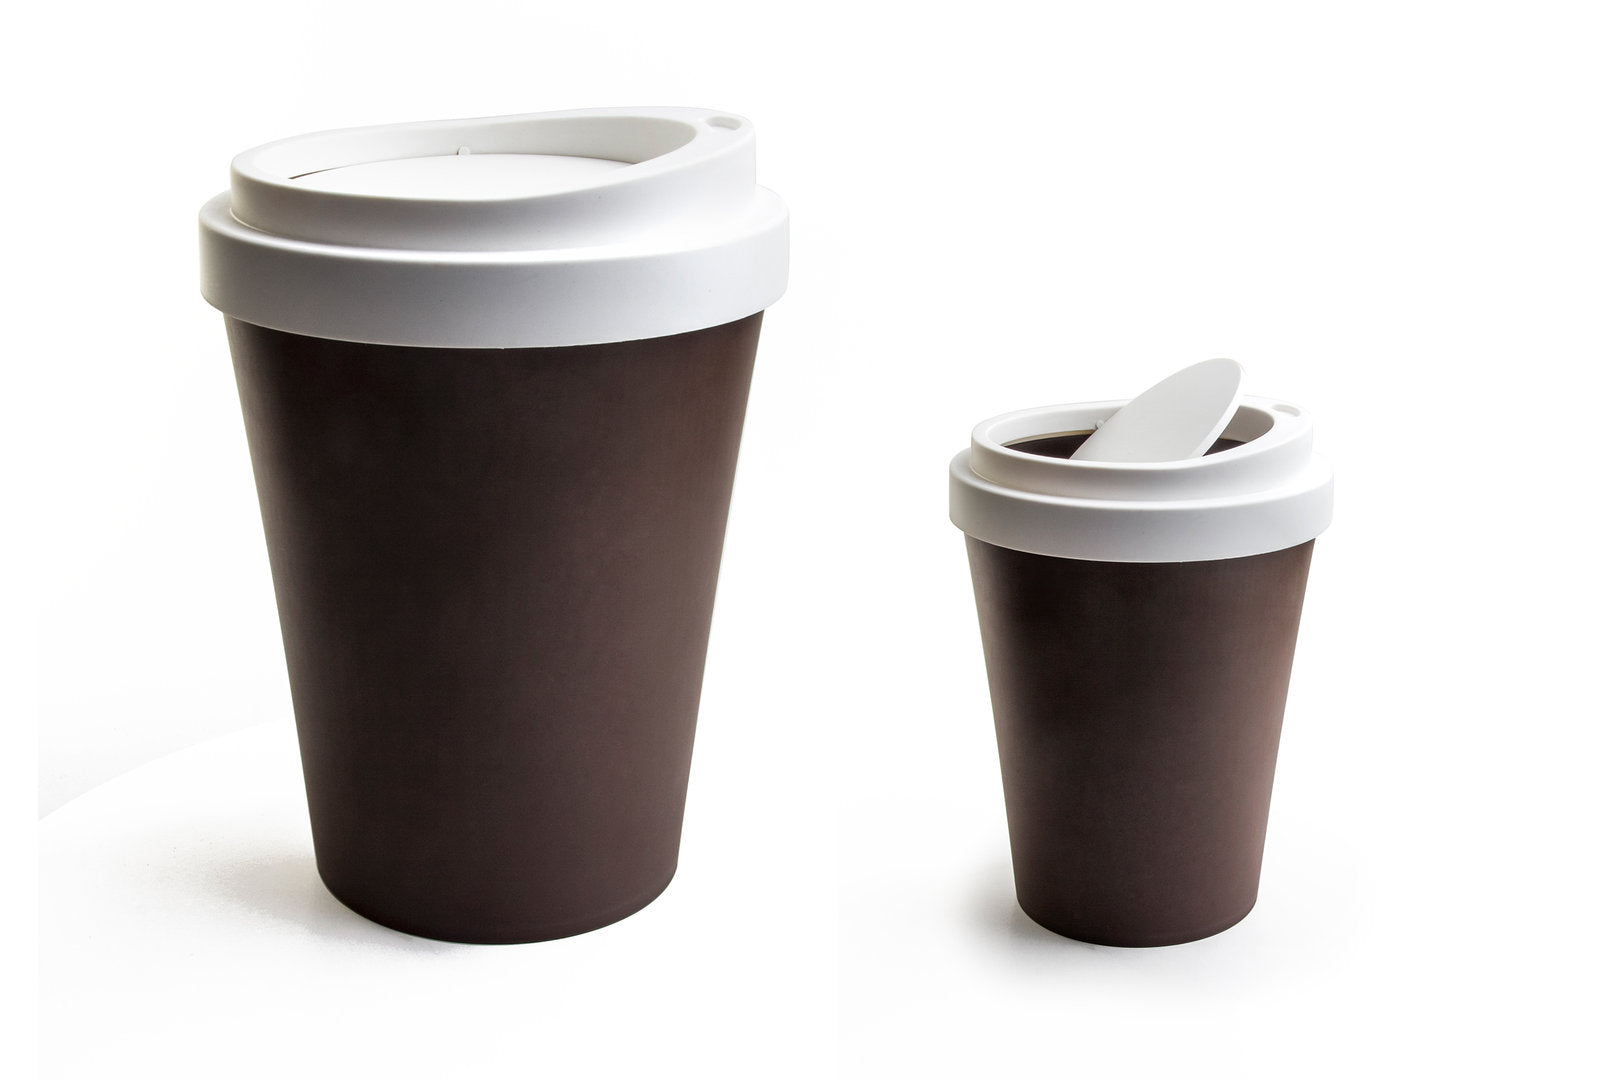 Mini waste bin "Coffee Bin" brown - Qualy